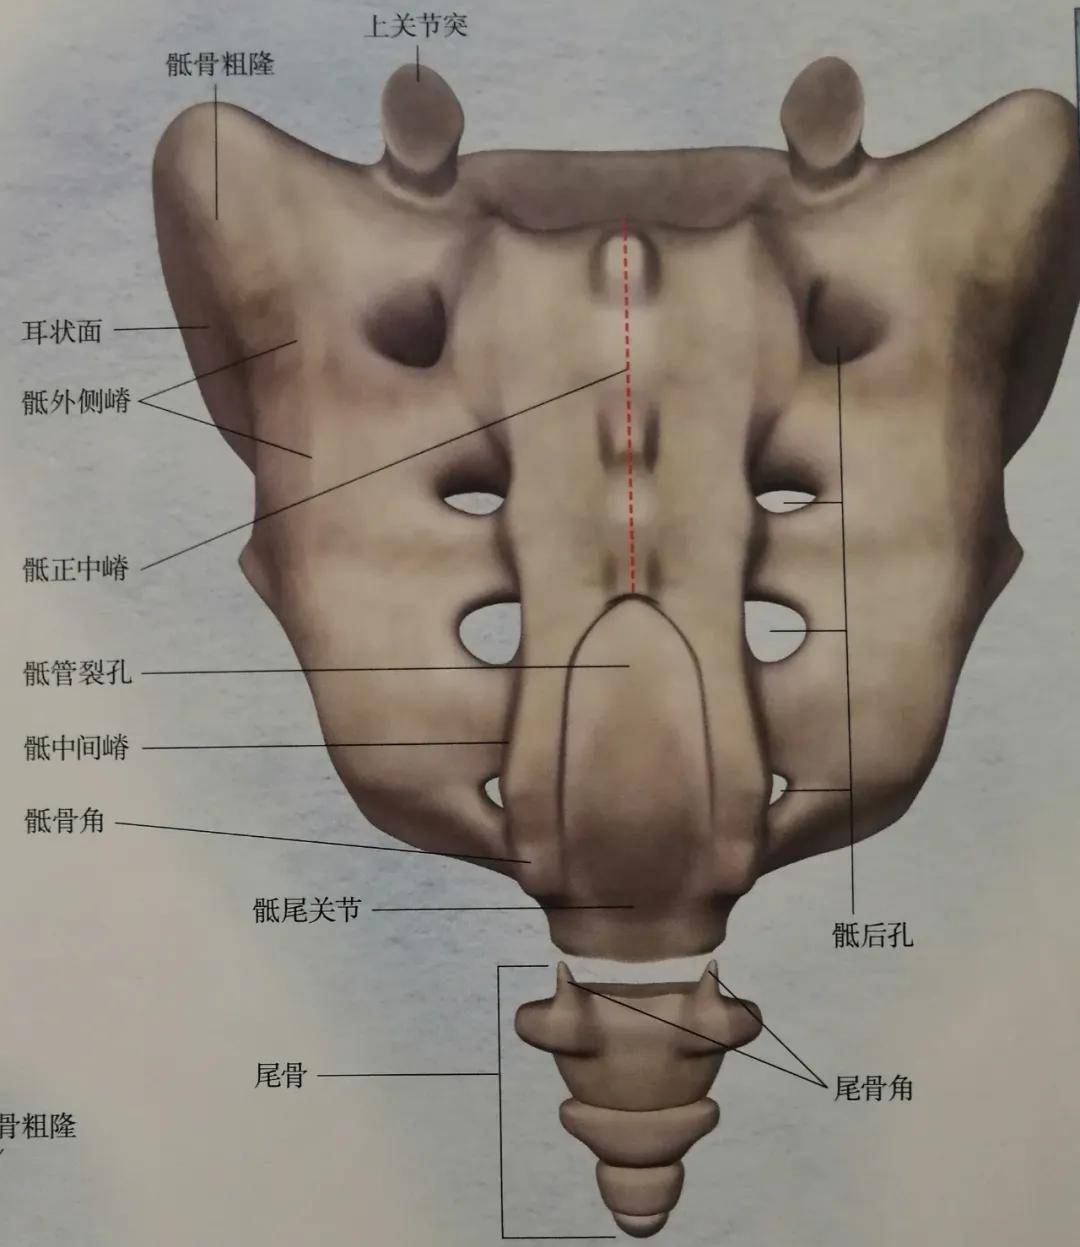 下方就是骶椎和尾椎,由于人类的进化,骶椎为了支撑体重逐渐密合成骶骨